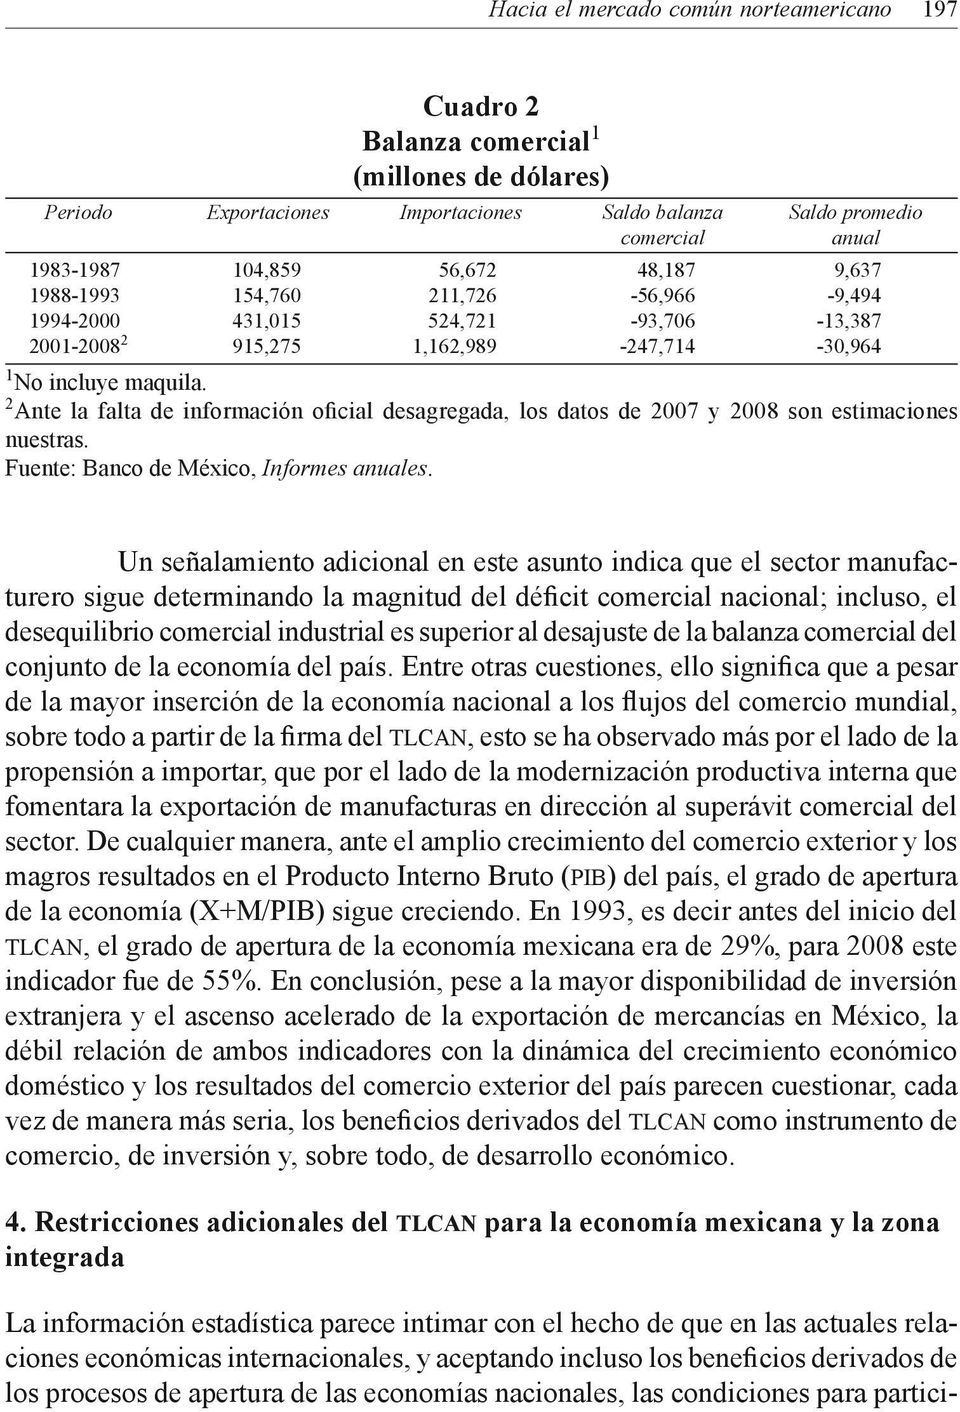 2 Ante la falta de información oficial desagregada, los datos de 2007 y 2008 son estimaciones nuestras. Fuente: Banco de México, Informes anuales.